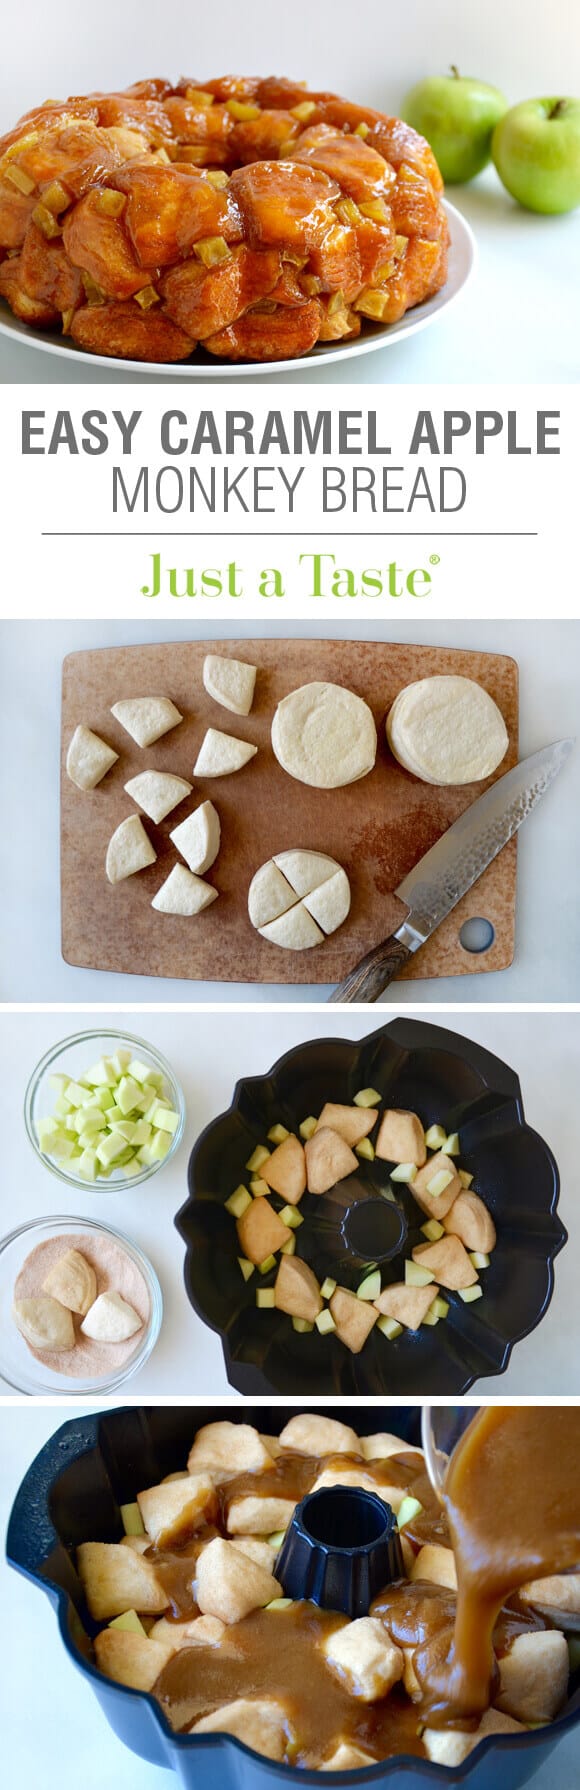 Easy Caramel Apple Monkey Bread Recipe